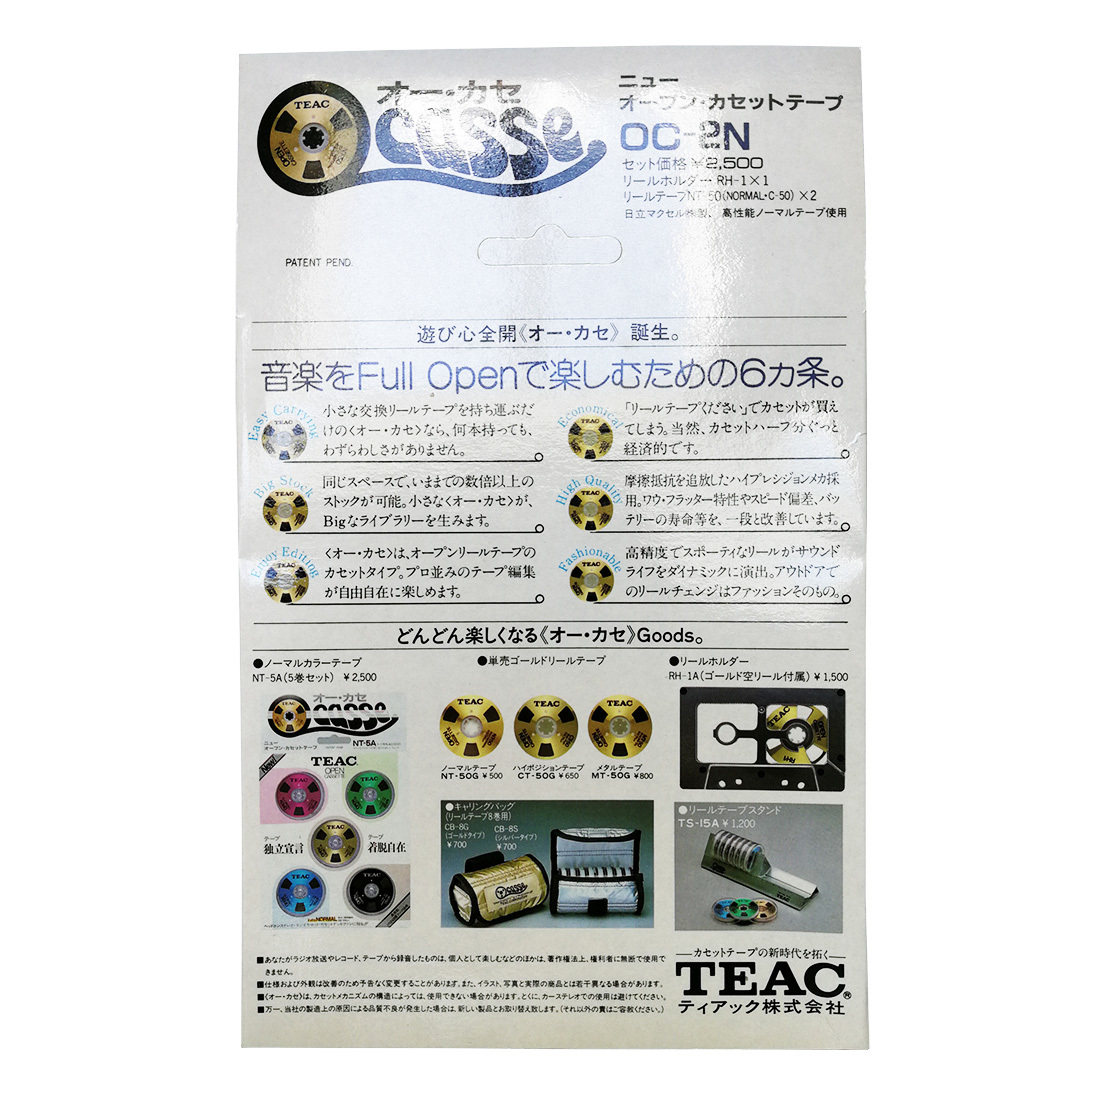 Teac Ocassse Open Cassette Reel to Reel OC-2N gold set - Retro